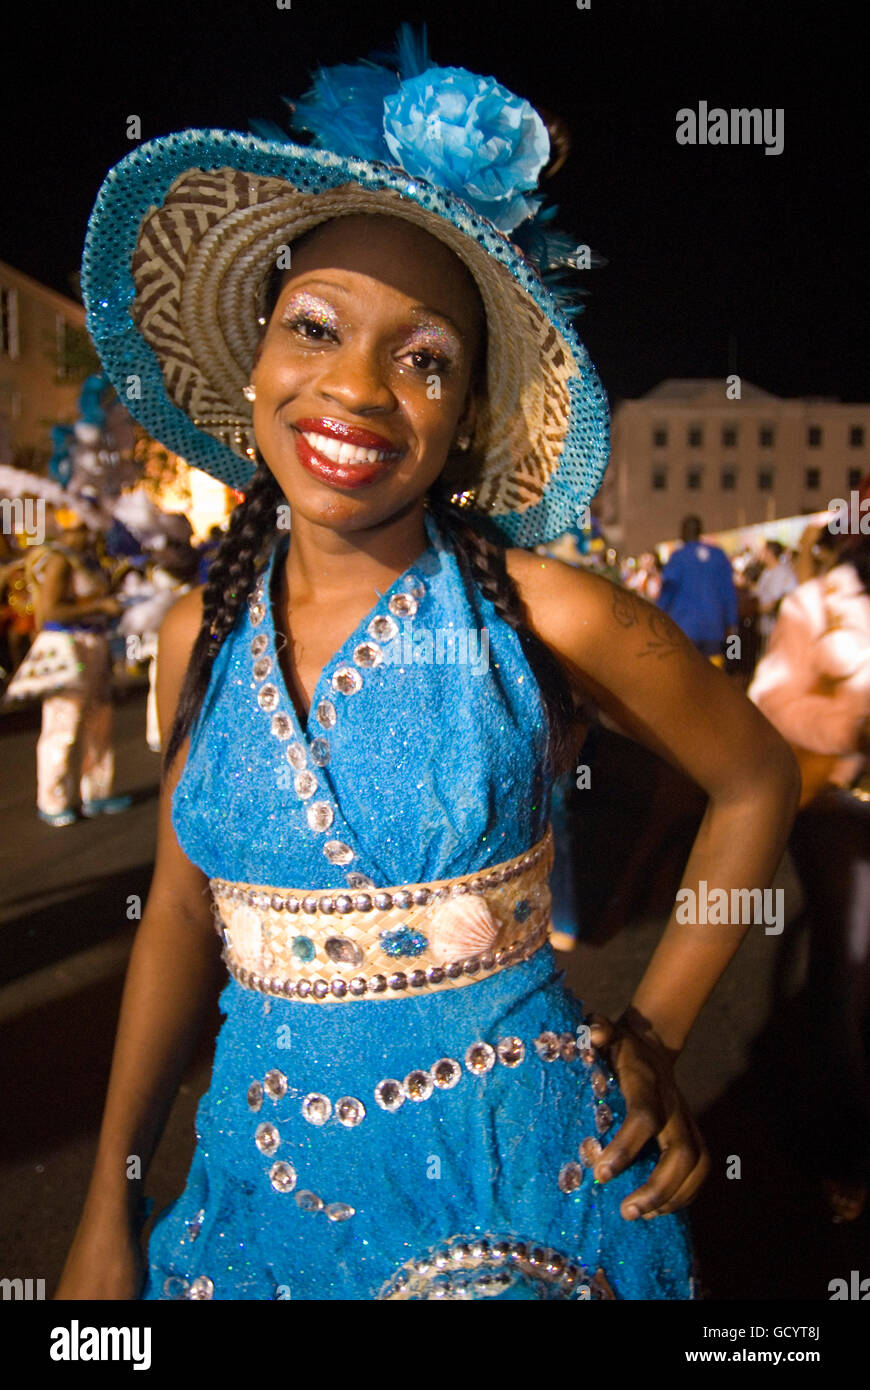 Carnaval del Junkanoo. Bay Street, Nassau, New Providence Island, Bahamas, Caribbean. New Year's Day Parade. Boxing Day. Costume Stock Photo